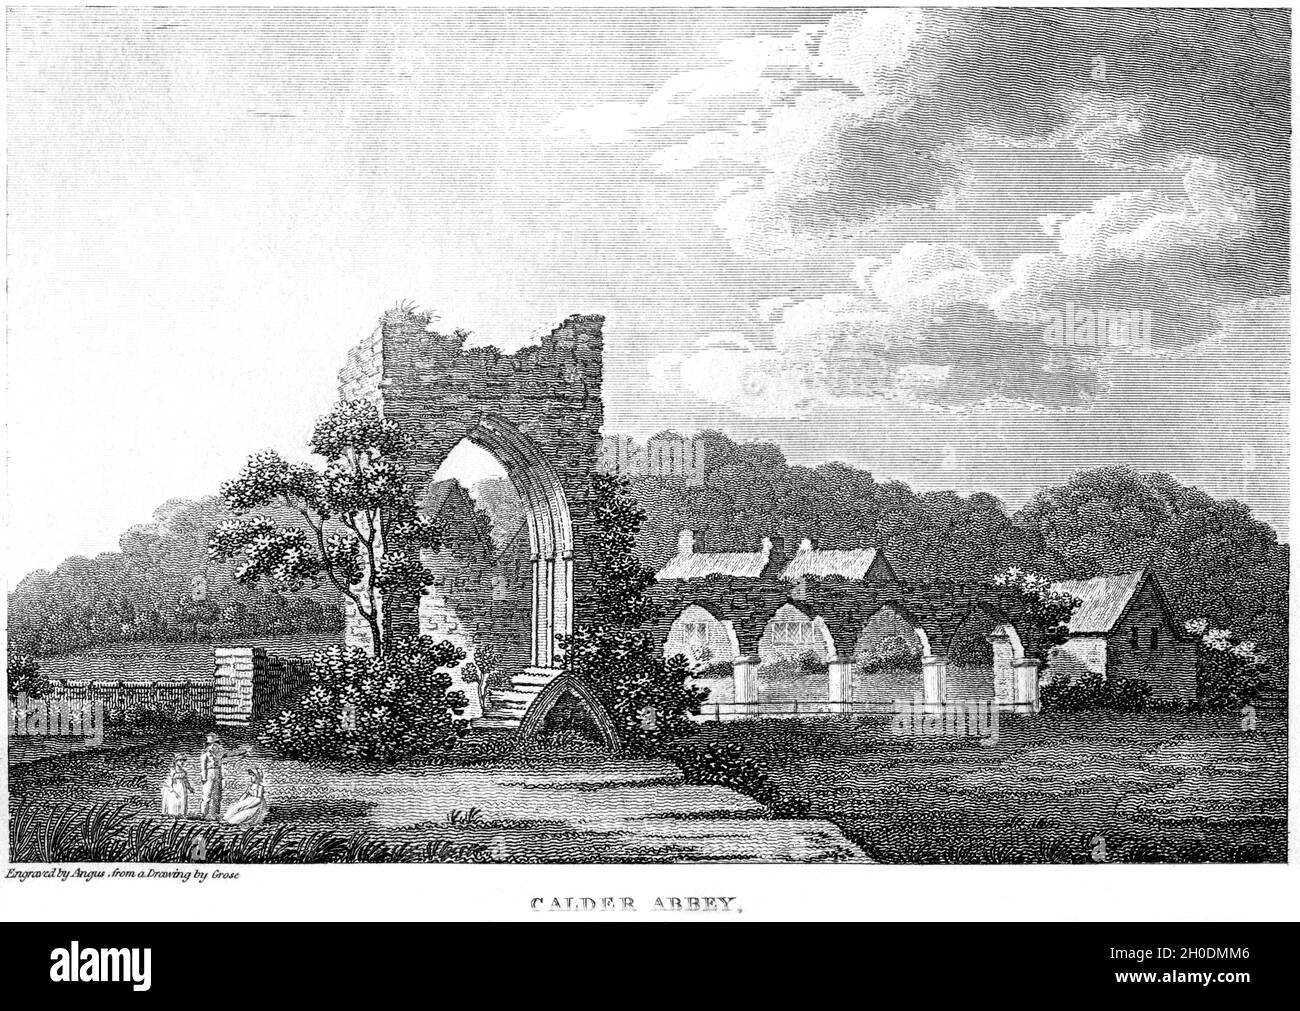 Eine Gravur von Calder Abbey, Cumberland UK, gescannt in hoher Auflösung von einem Buch aus dem Jahr 1812. Es wird angenommen, dass dieses Bild urheberrechtlich frei ist. Stockfoto